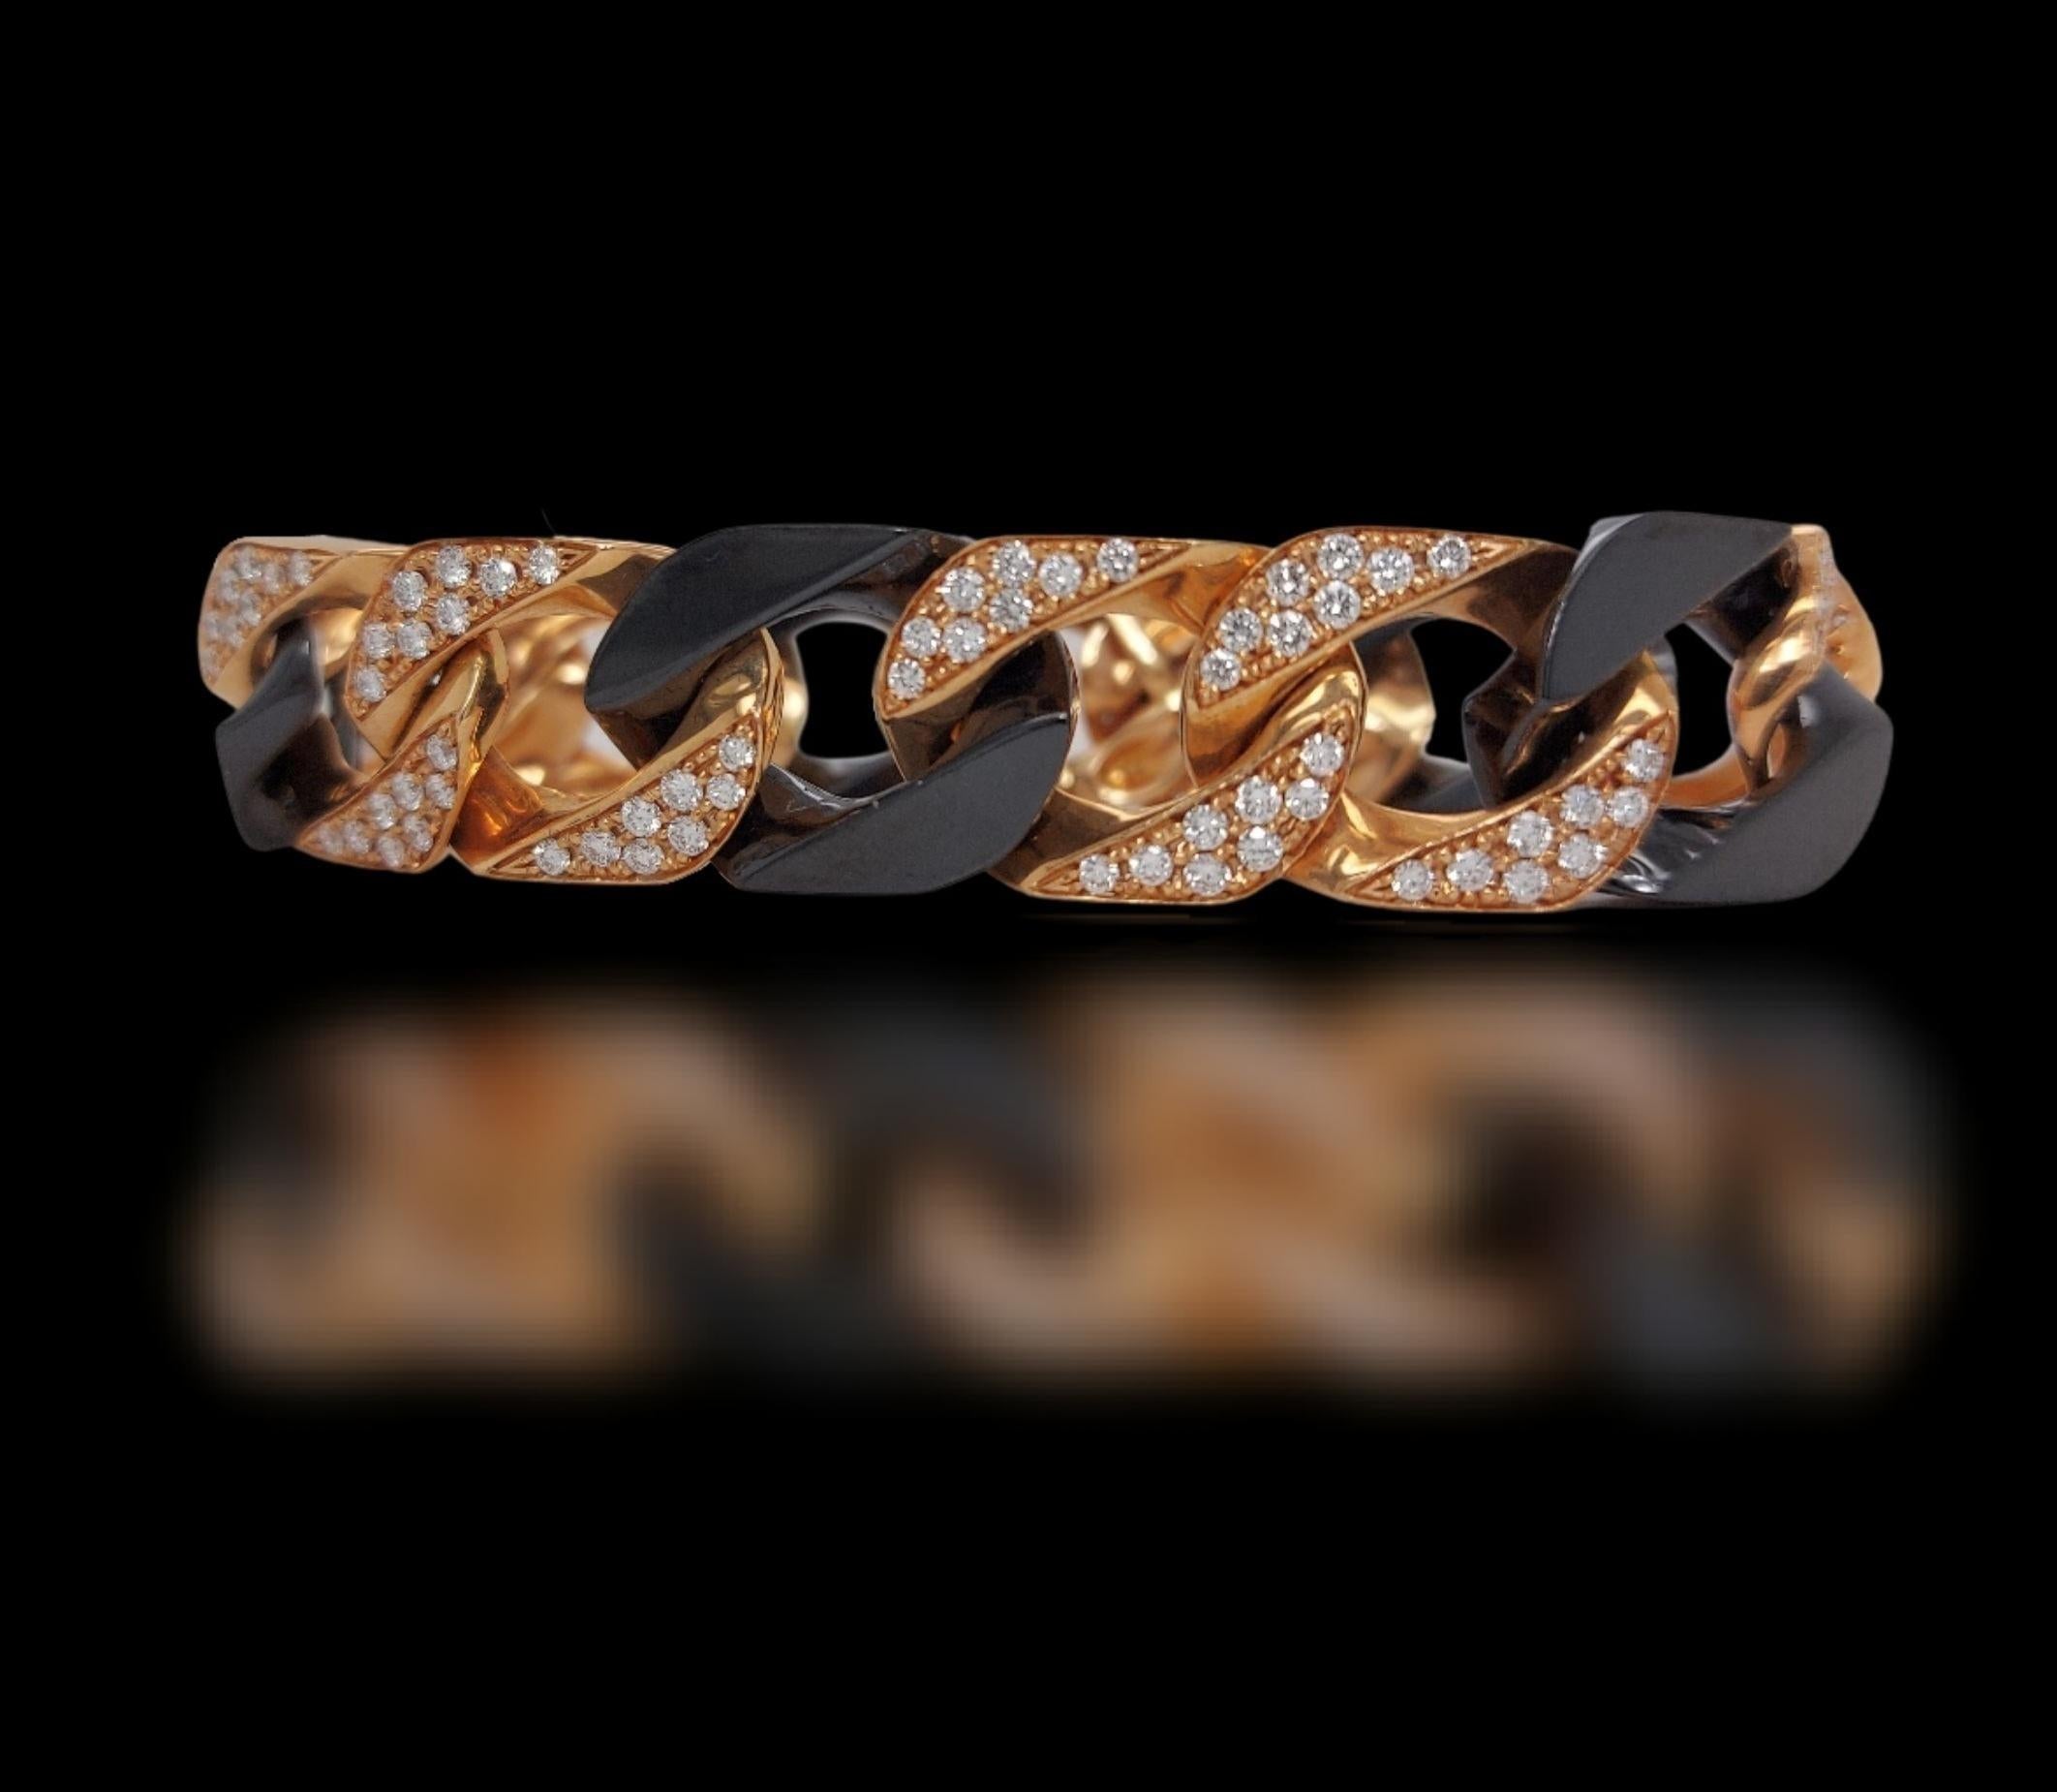 bracelet en or rose 18 carats avec diamants taille brillant et onyx noir

Des diamants : 3.6ct de diamants

Matériau : or rose 18kt et onyx noir

Poids total : 47.3 grammes / 1.670 oz / 30.5 dwt

Mesures : longueur 18 cm. 